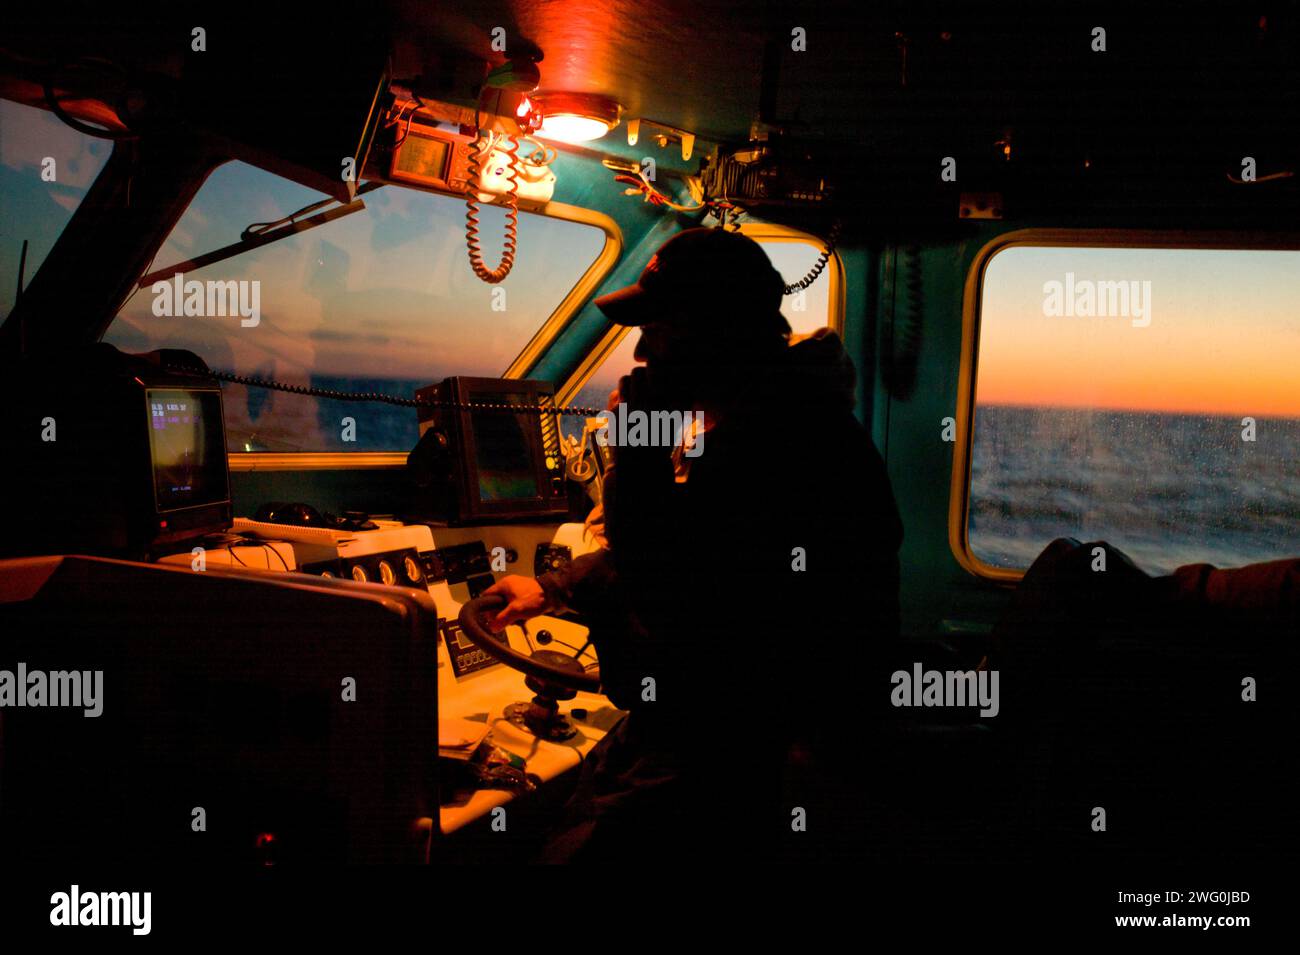 Ein Fischer spricht im Radio im frühen Morgenlicht. Golf von St. Lawrence bei North Rustico, Prince Edward Island, Kanada. Stockfoto